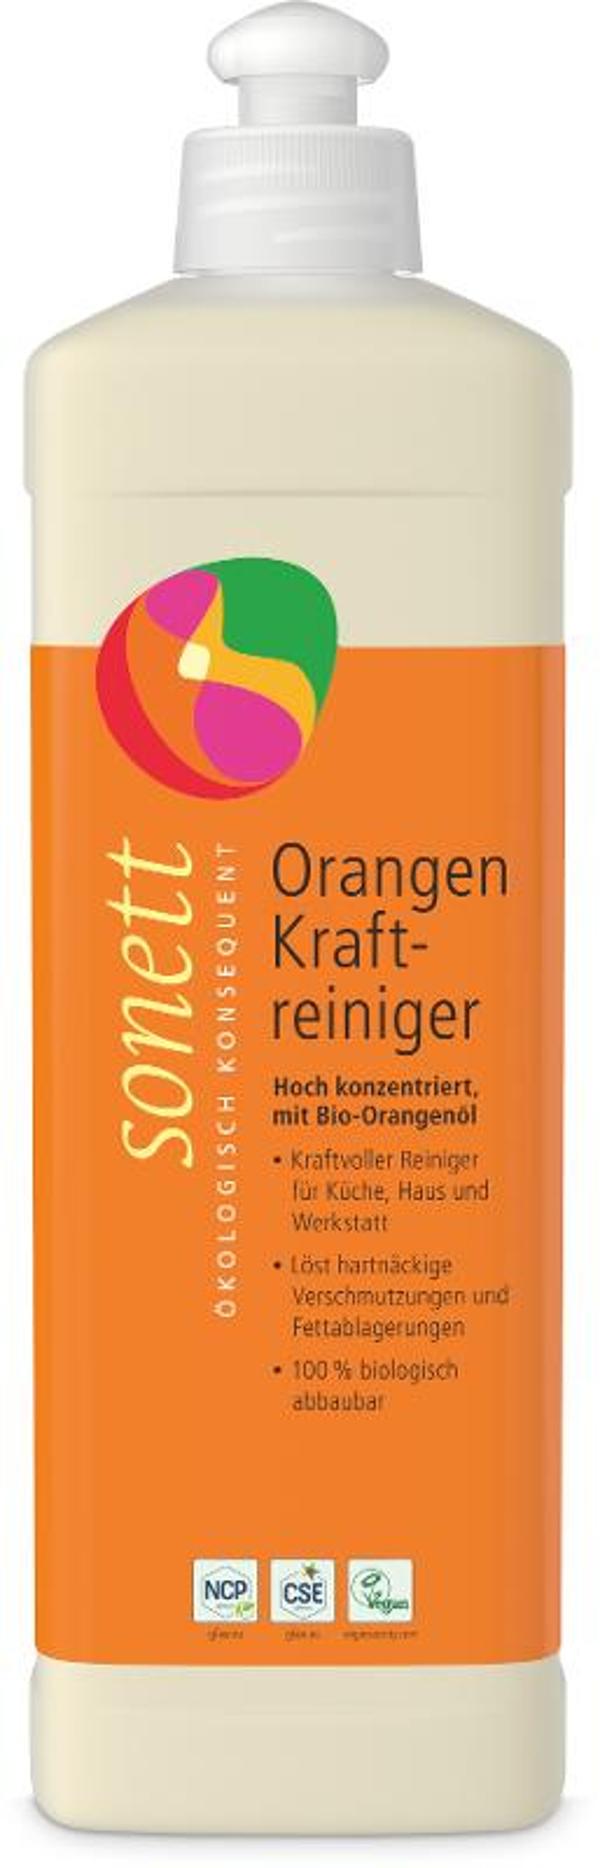 Produktfoto zu Orangenkraftreiniger 500 ml